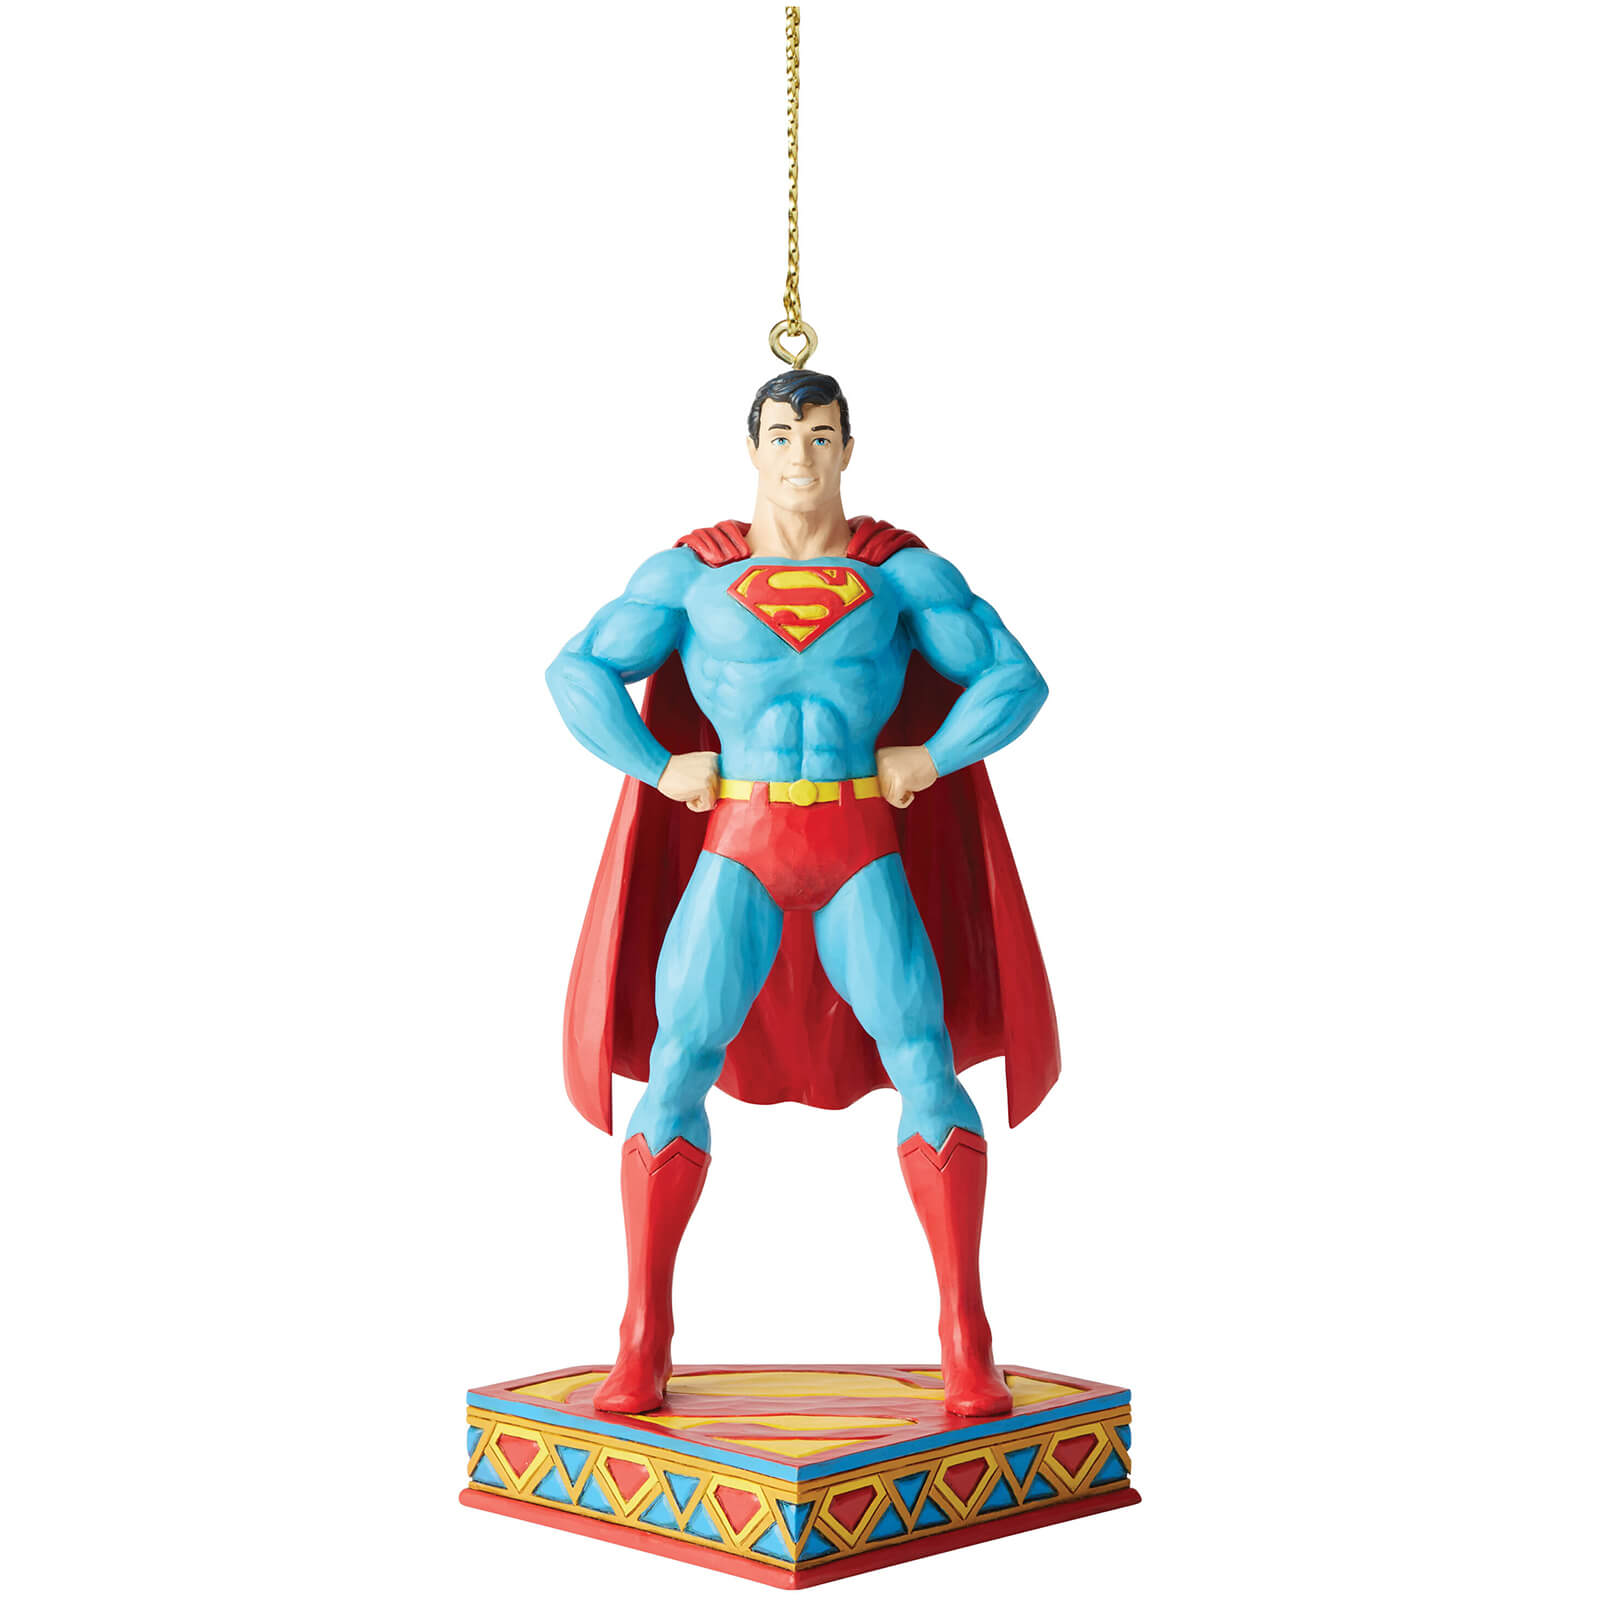 Enesco DC Comics by Jim Shore Superman Hanging Ornament 11.0cm